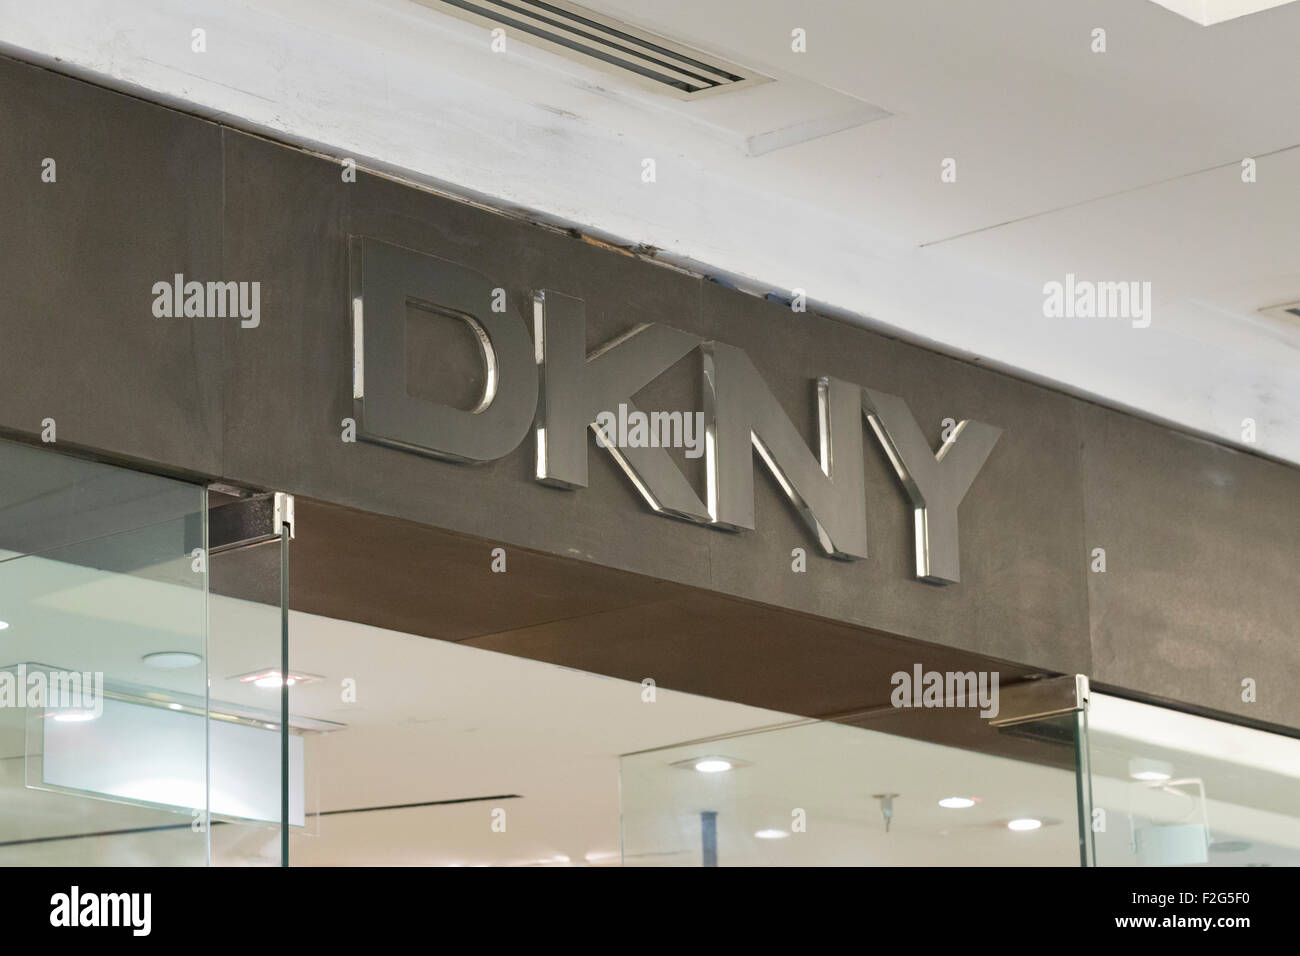 DKNY sign Stock Photo